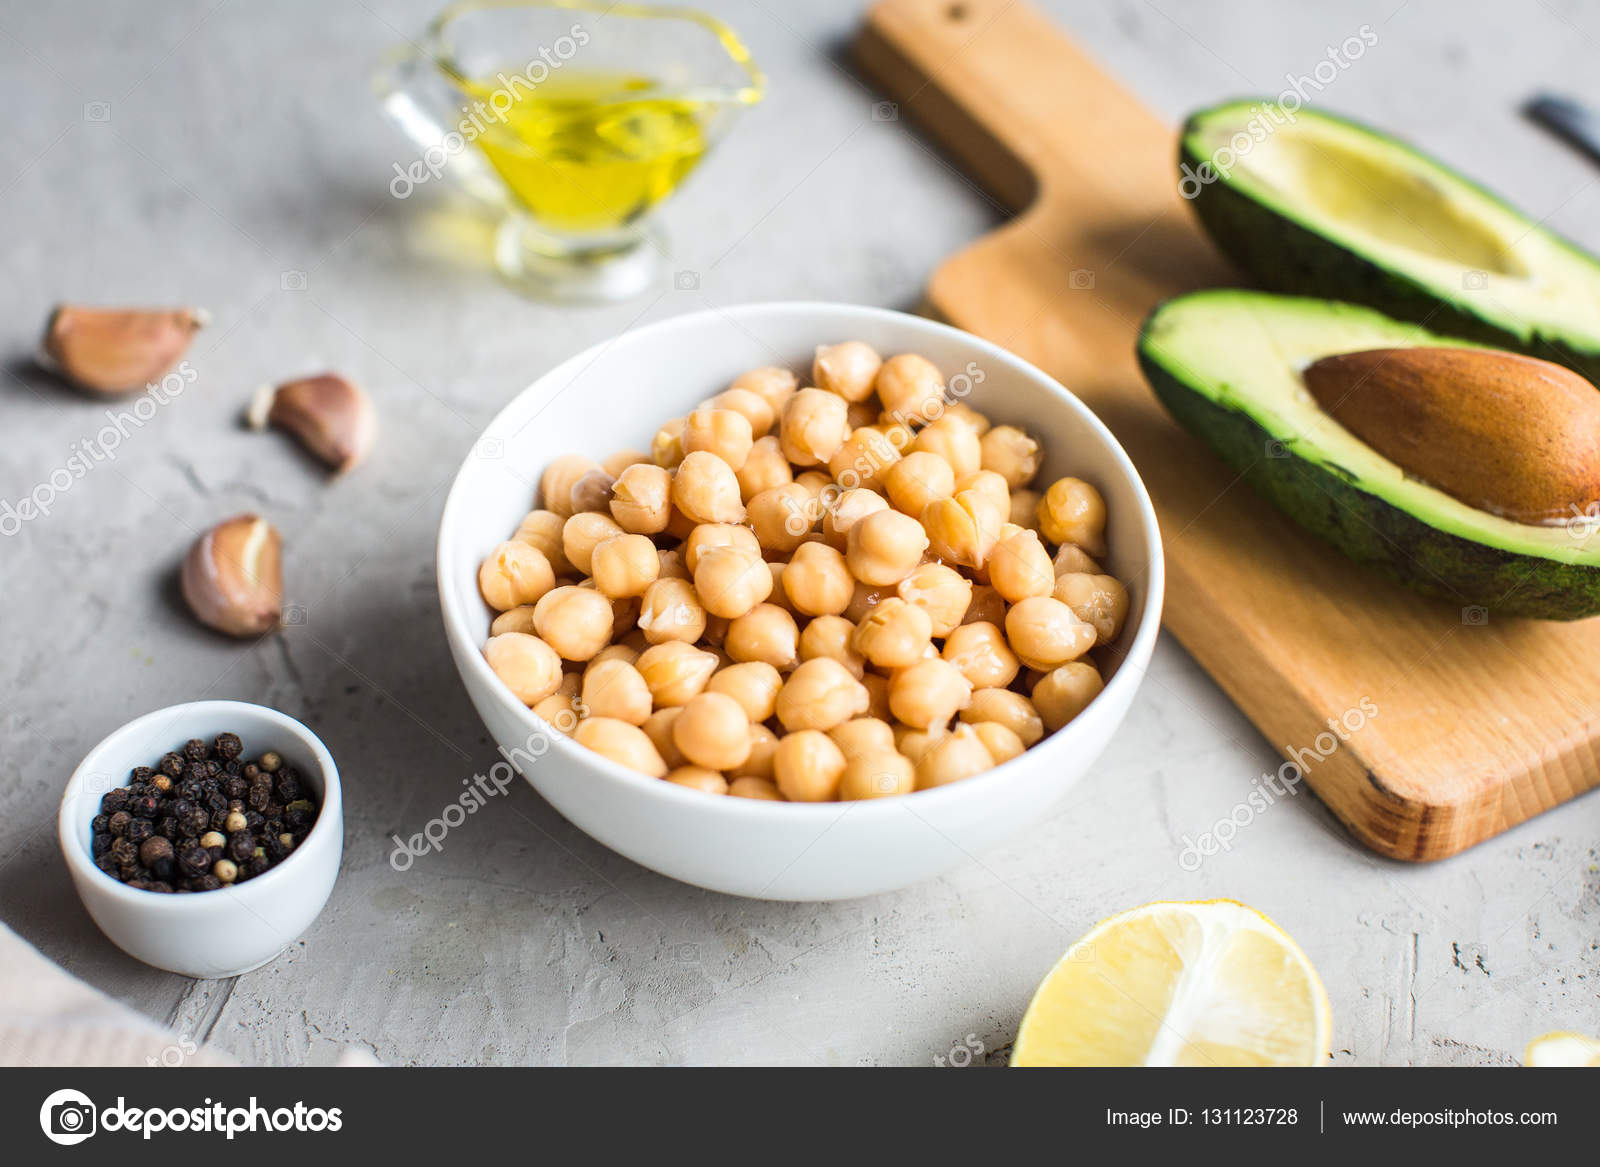 ingredientes para cocinar hummus — Foto de stock ...